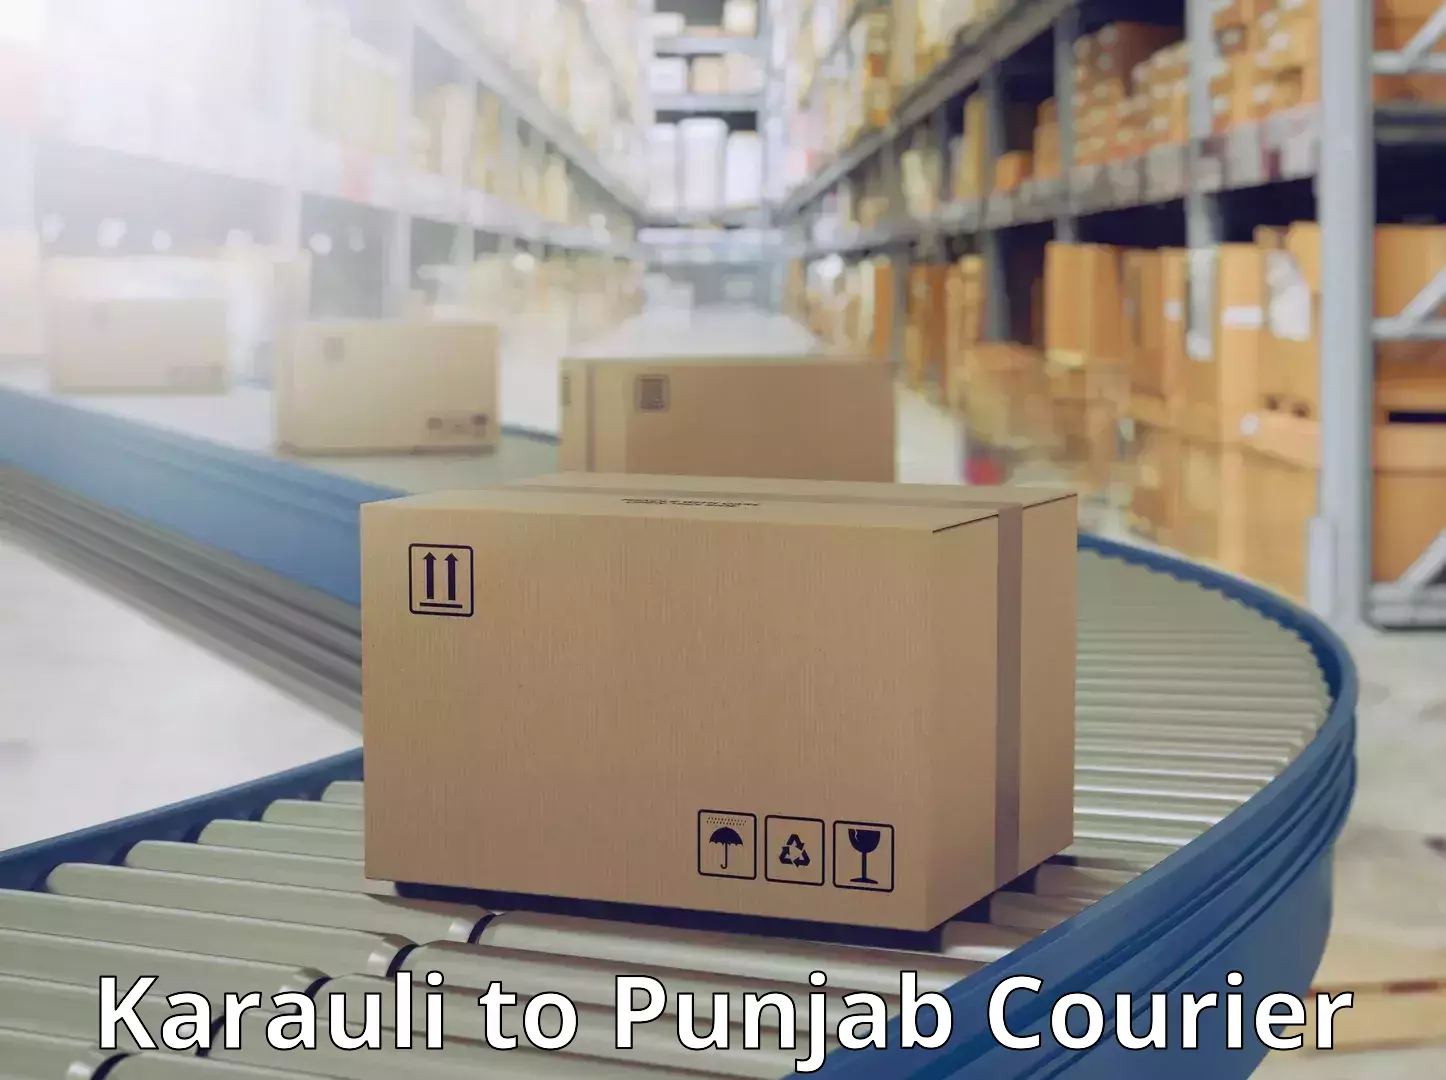 Online package tracking Karauli to Punjab